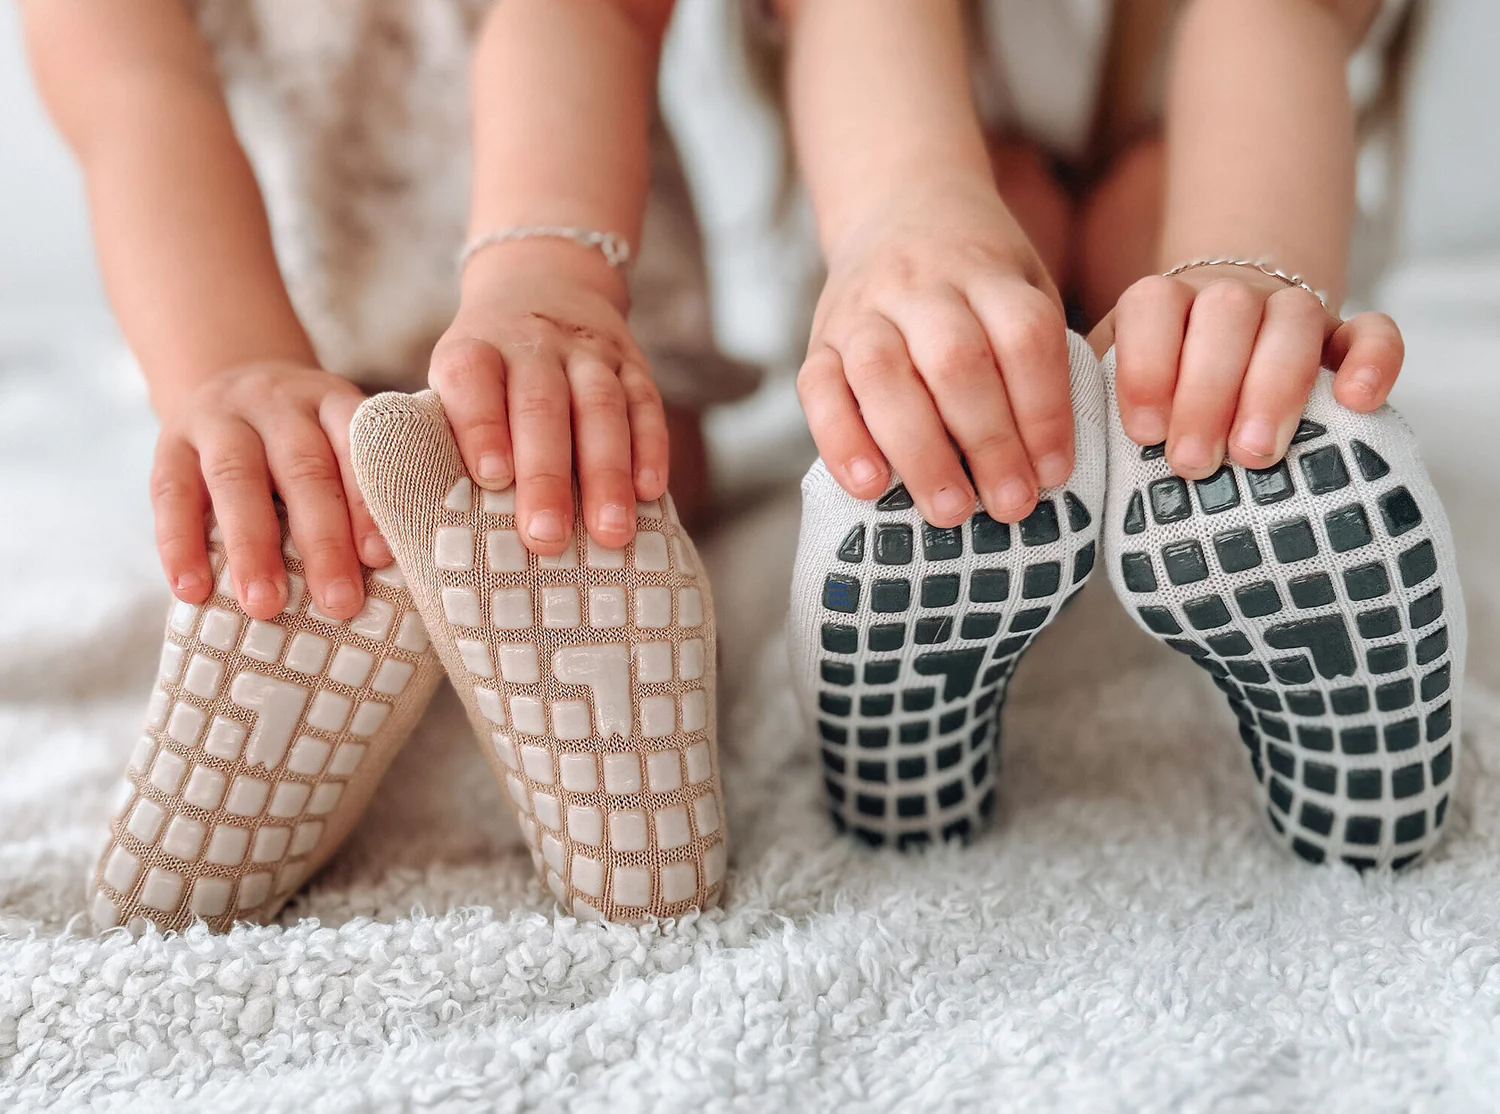 How To Make Baby Socks Non-Slip